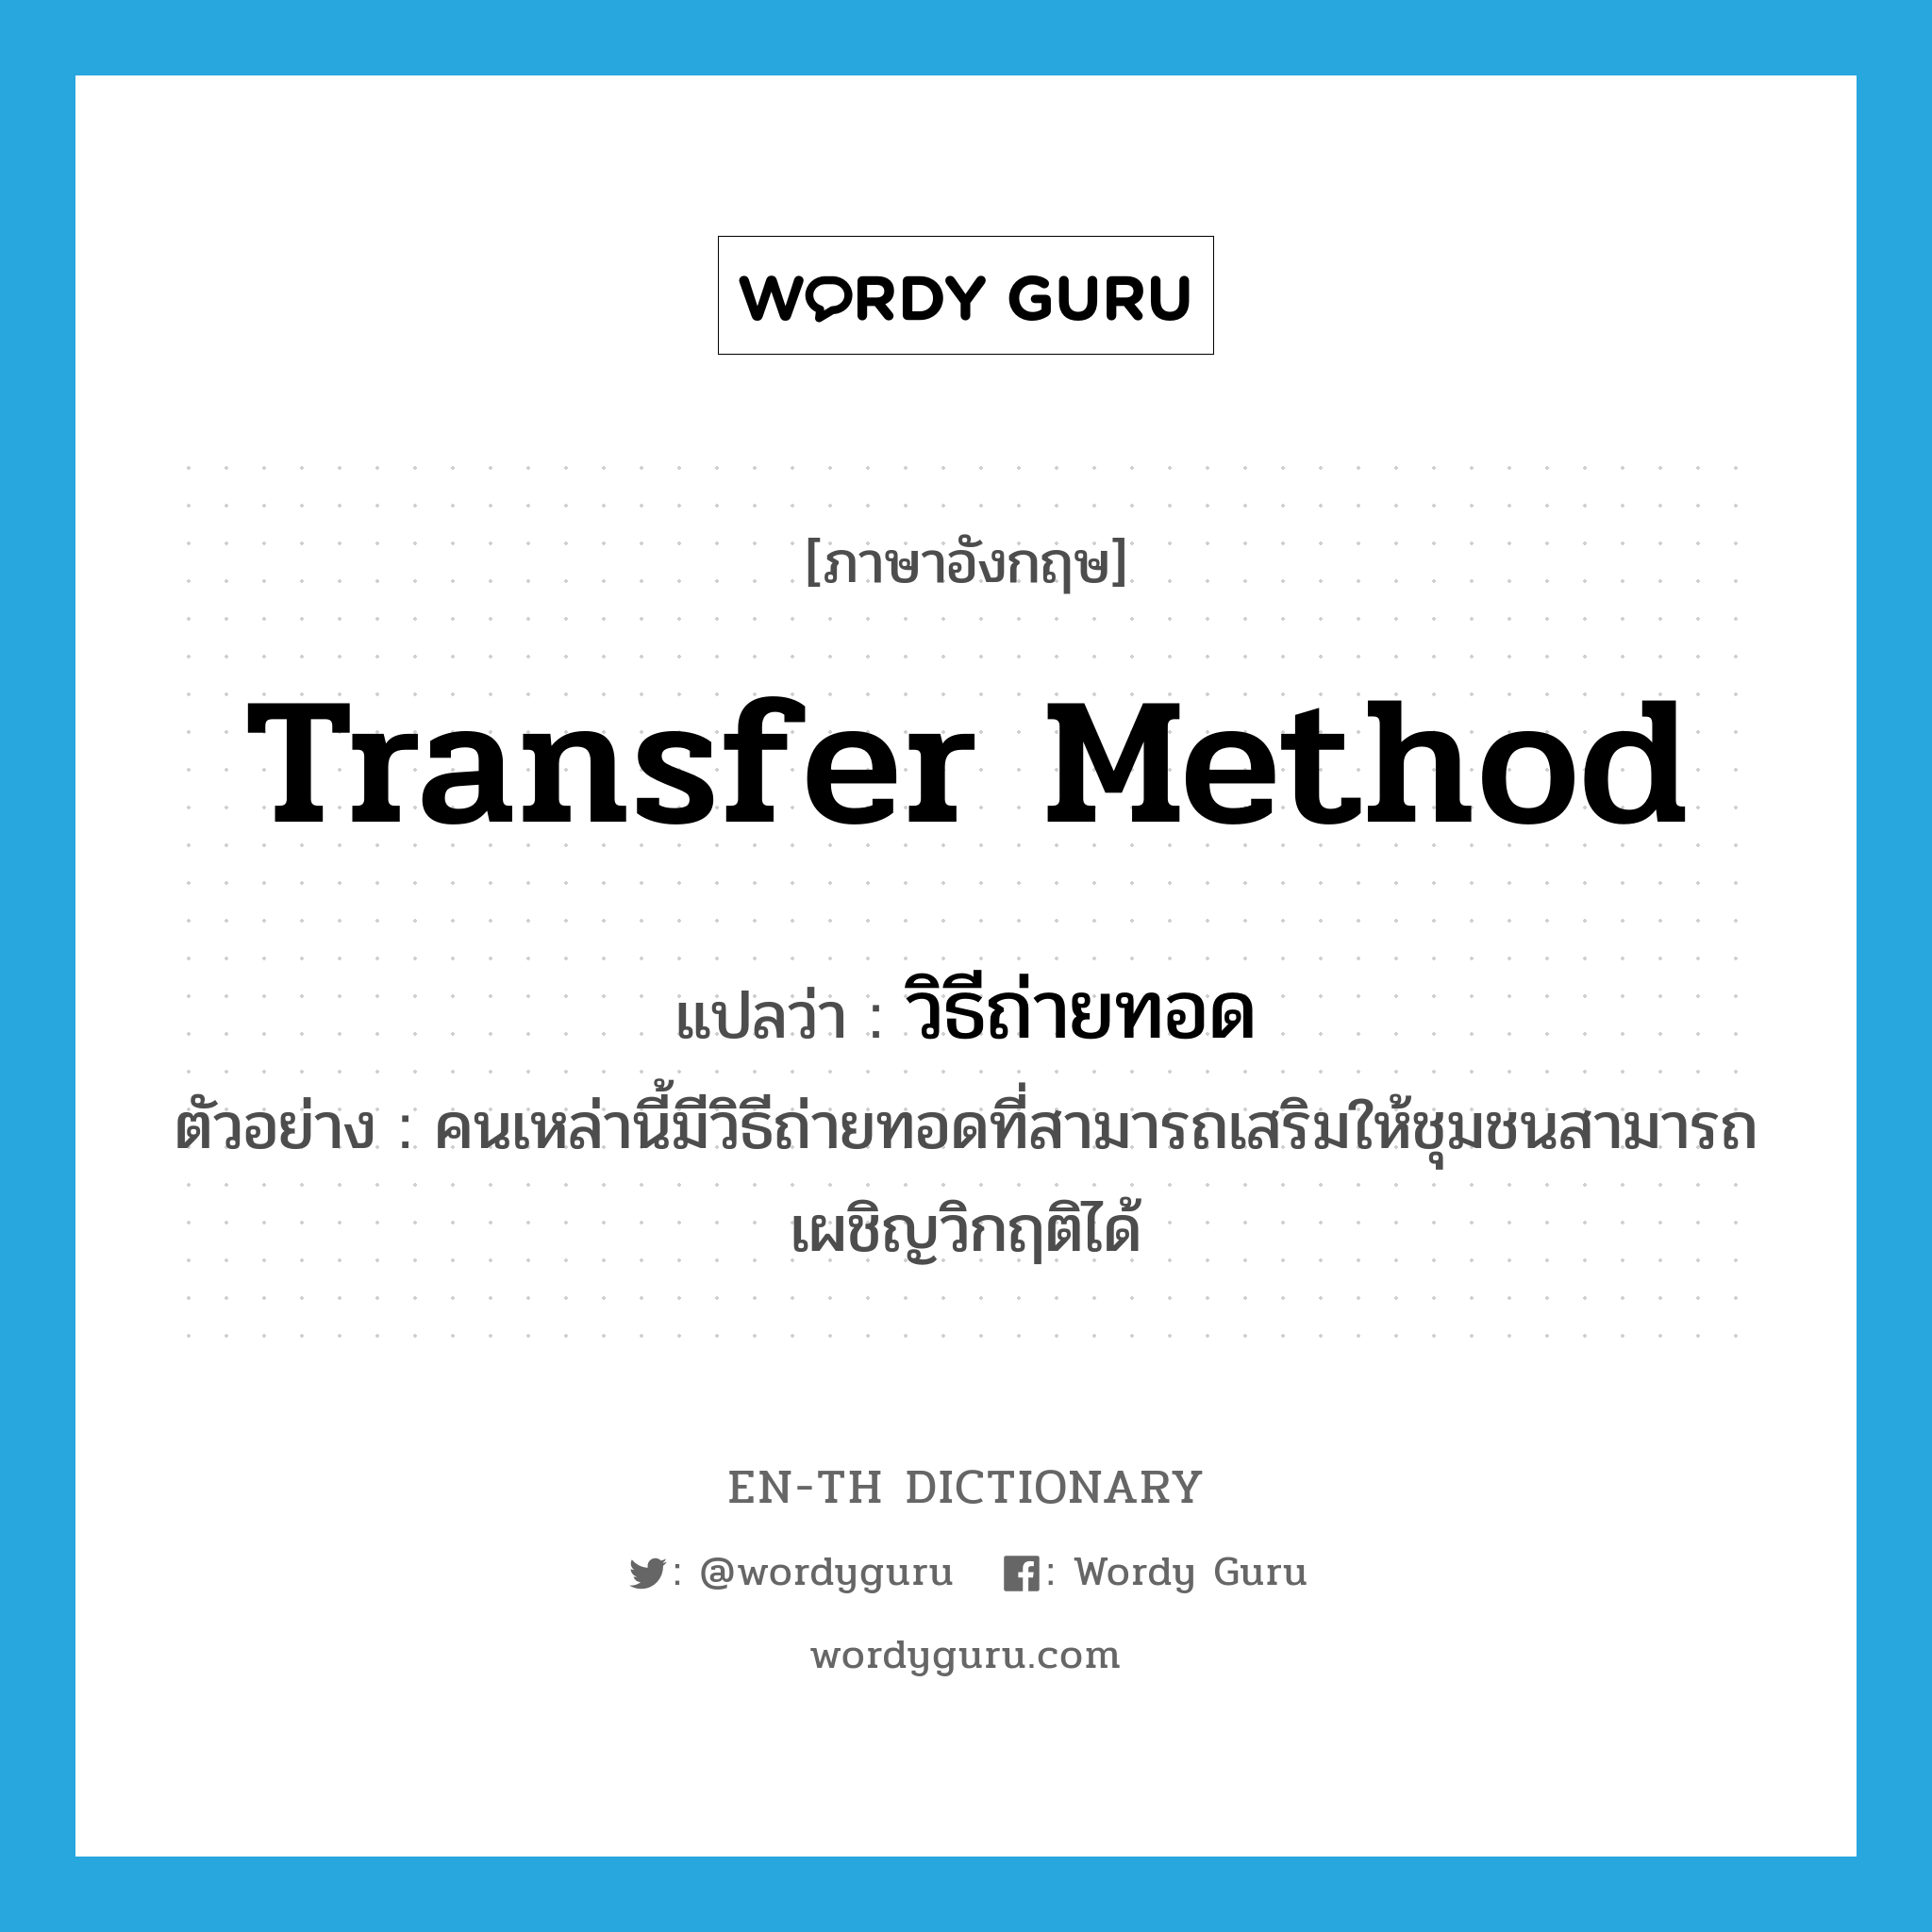 transfer method แปลว่า?, คำศัพท์ภาษาอังกฤษ transfer method แปลว่า วิธีถ่ายทอด ประเภท N ตัวอย่าง คนเหล่านี้มีวิธีถ่ายทอดที่สามารถเสริมให้ชุมชนสามารถเผชิญวิกฤติได้ หมวด N